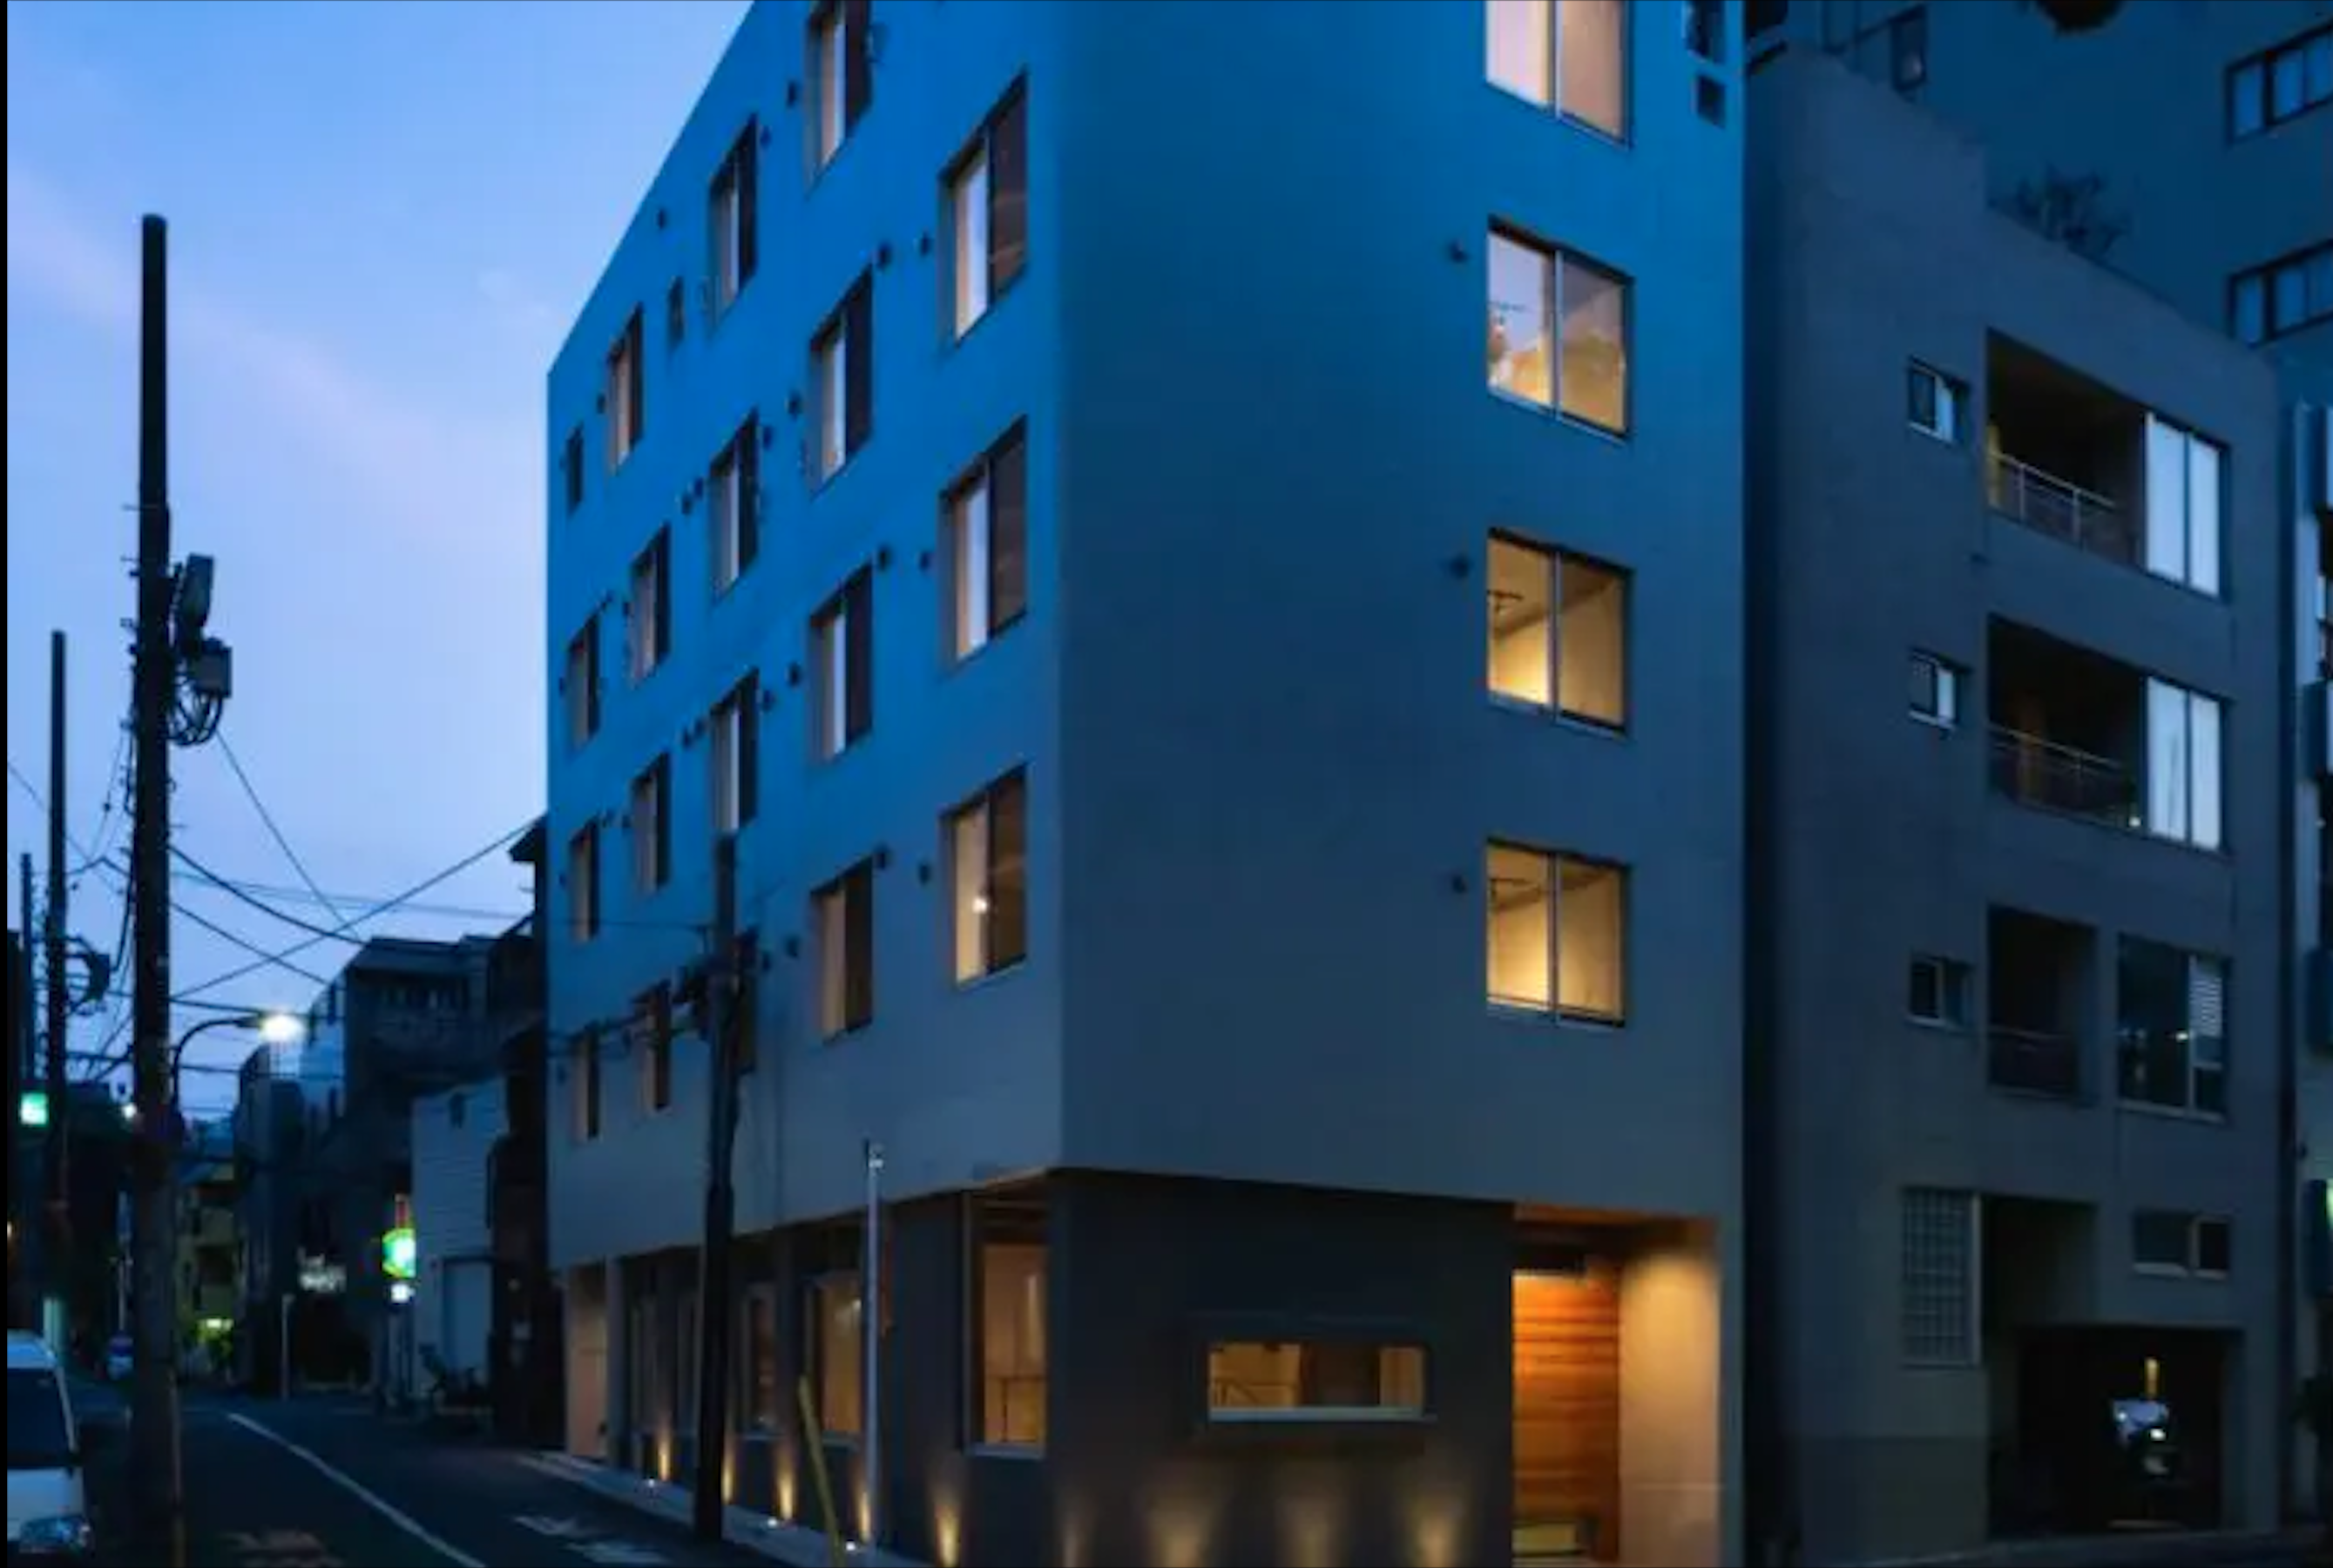 建物外観_新宿早稲田レーベルの1階・地下1階にあります。 ©bizcircle